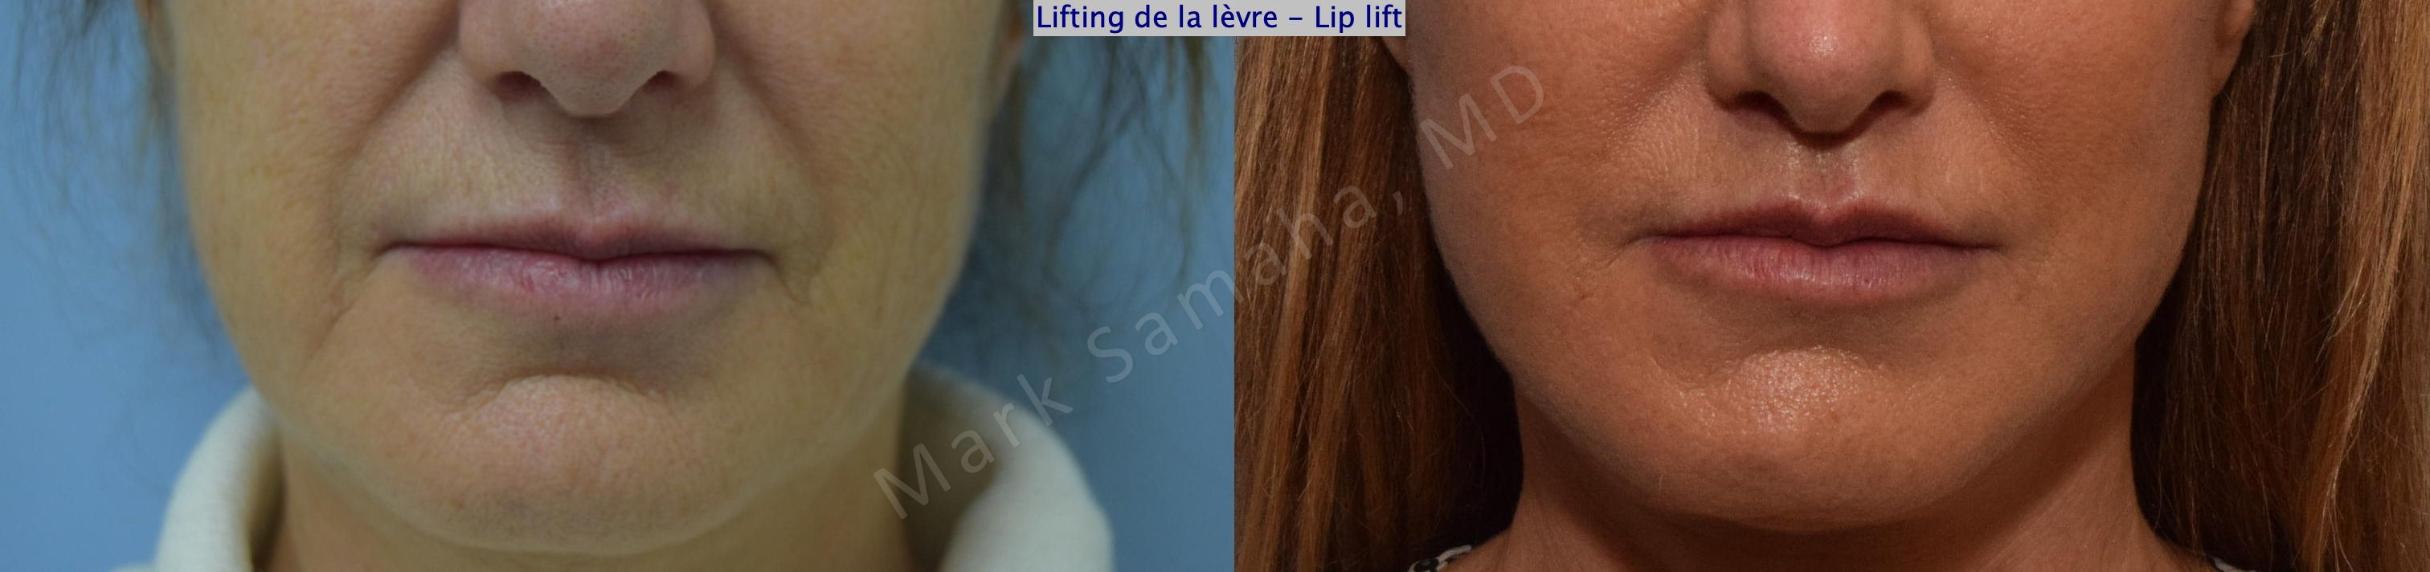 Before & After Lifting de la lèvre supérieure / Lip Lift  Case 168 Front View in Mount Royal, QC